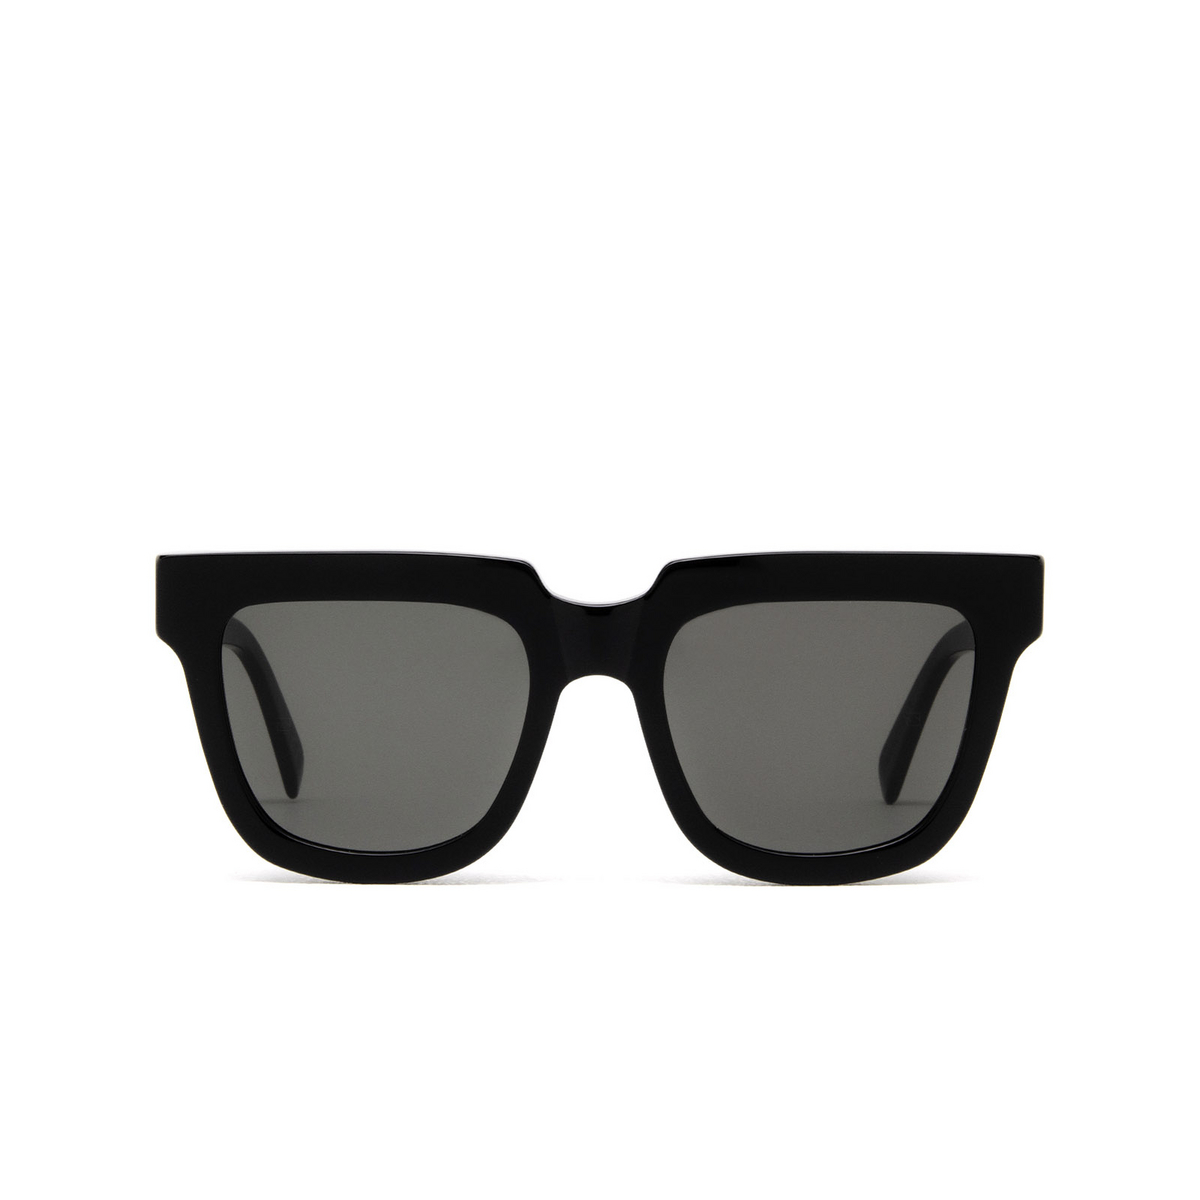 Retrosuperfuture® Square Sunglasses: Modo color Black Jfh - front view.